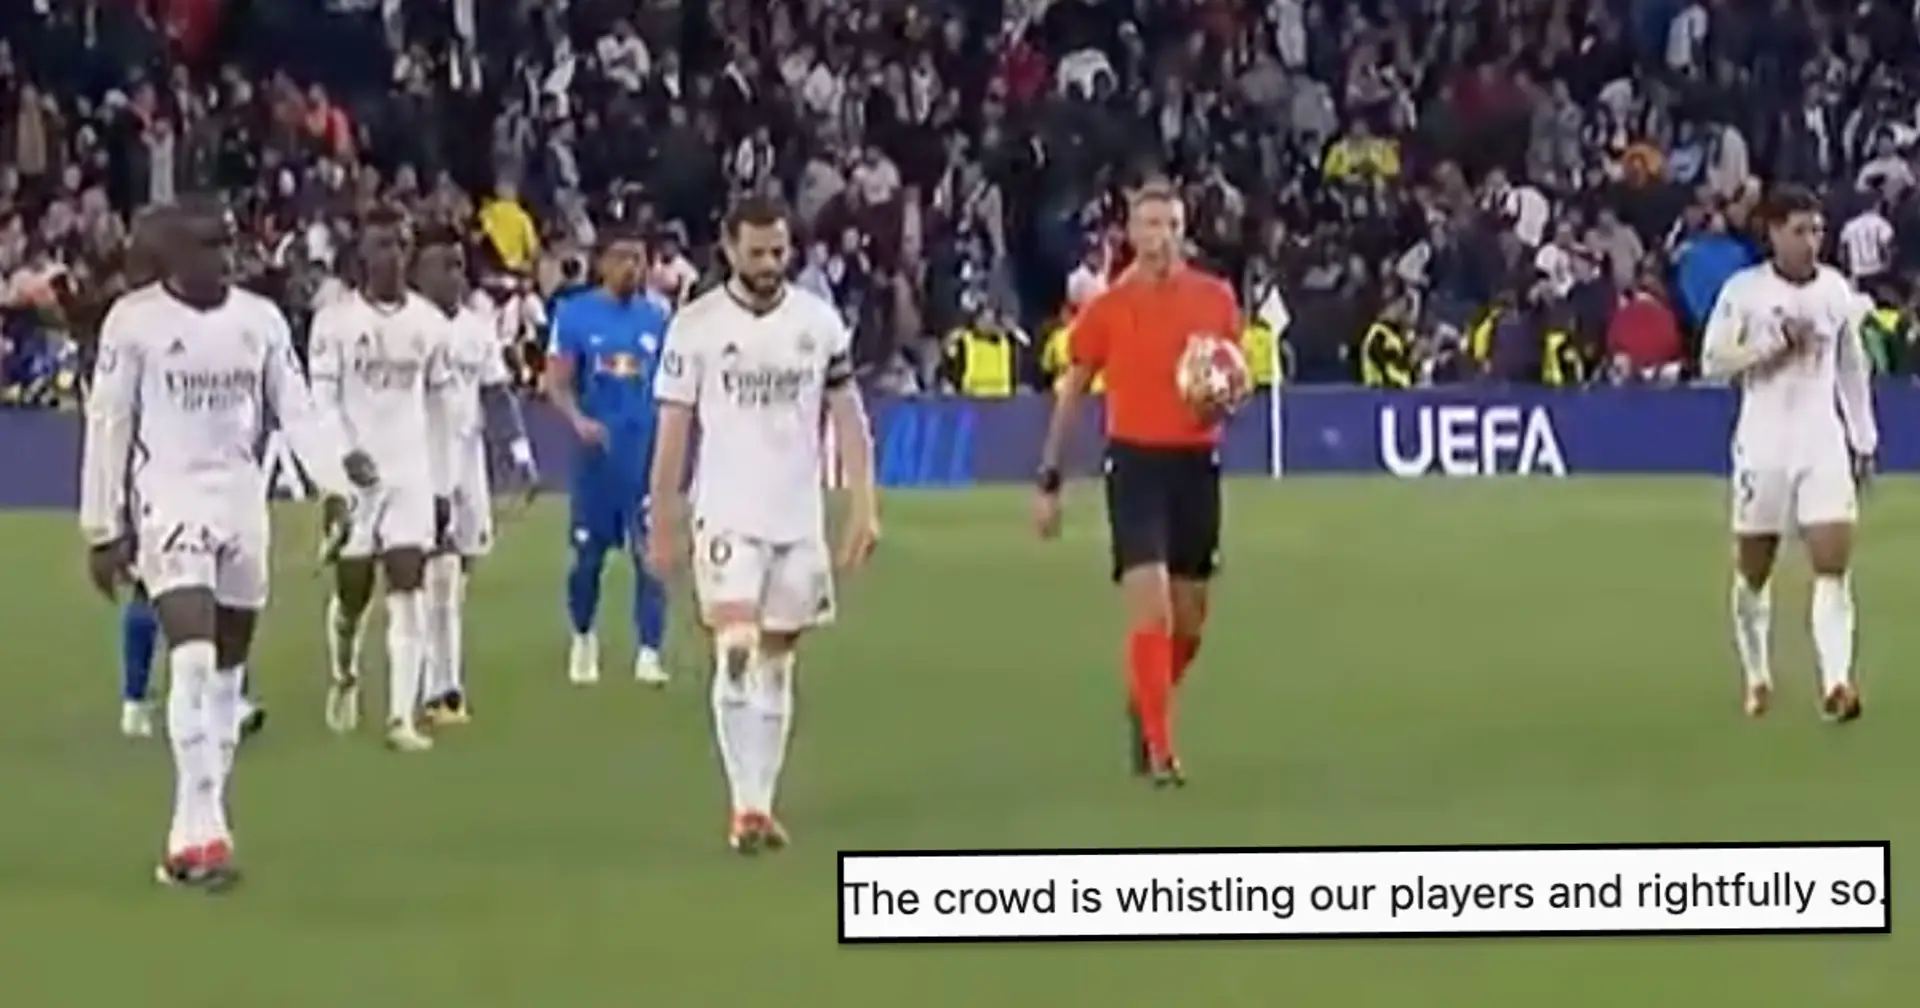 "Le pire match depuis le 4-0 contre City jusqu'à présent": les Madridistas choqués par le jeu du Real Madrid vs Leipzig